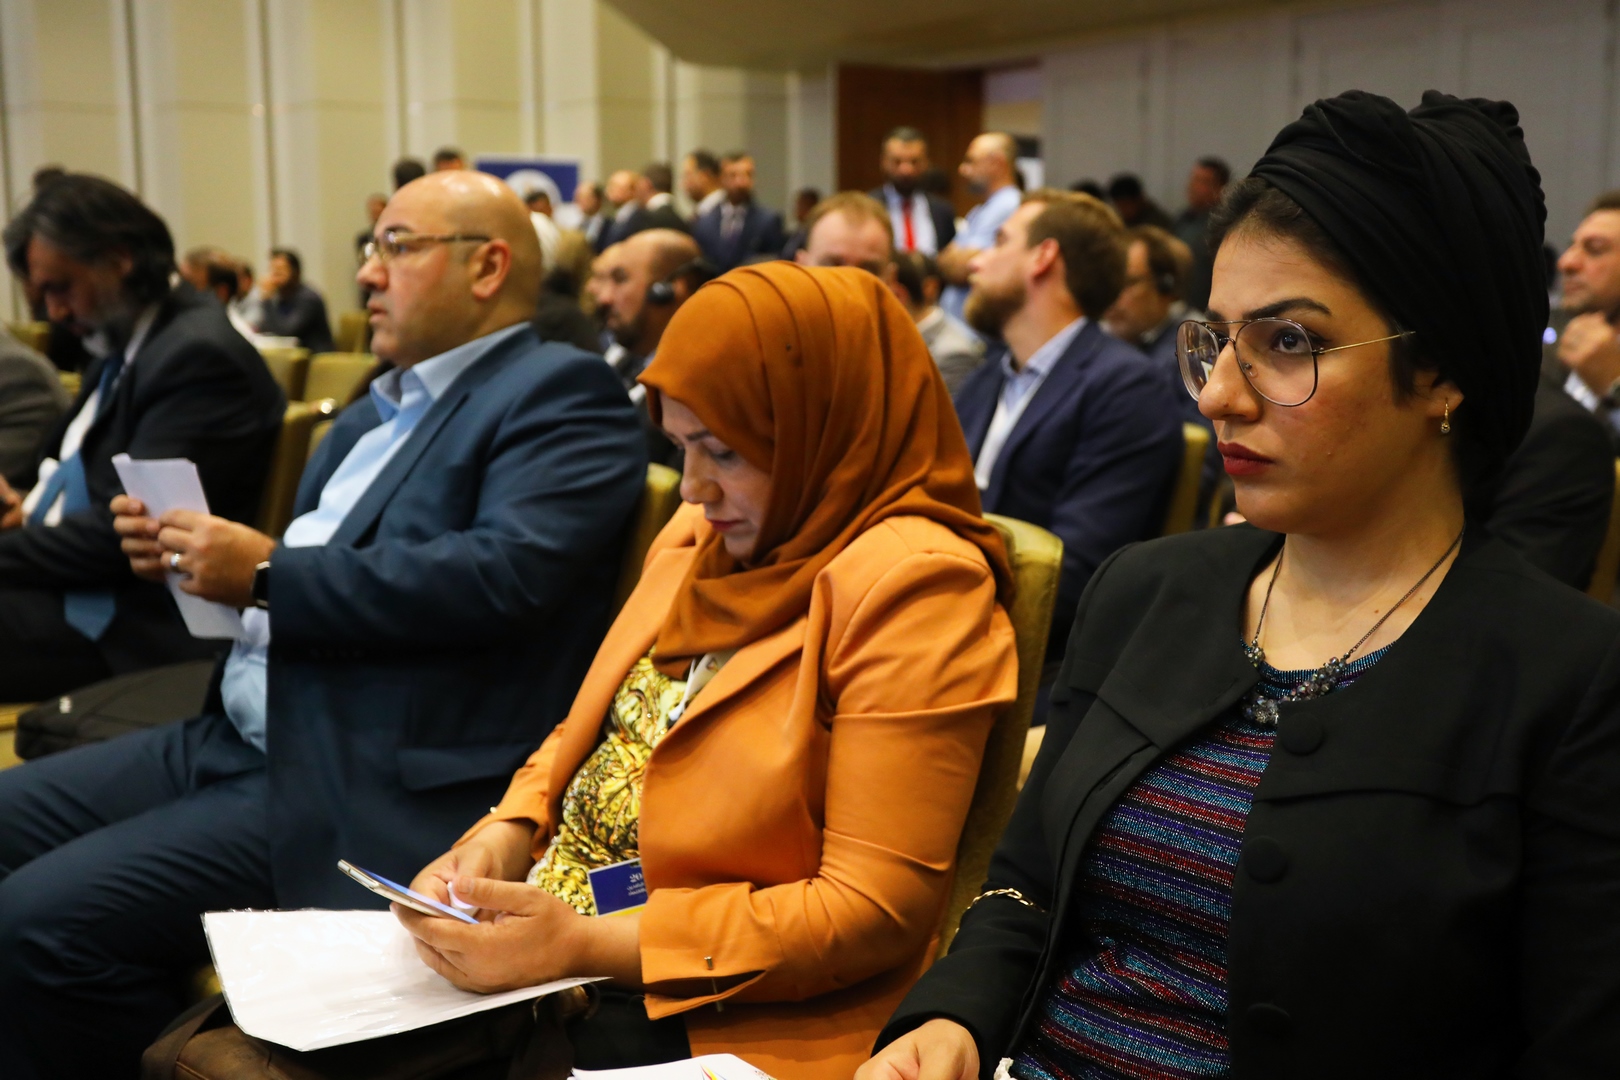 الجلسة التاسعة دور قطاع الاتصالات في تطوير الاقتصاد العراقي 